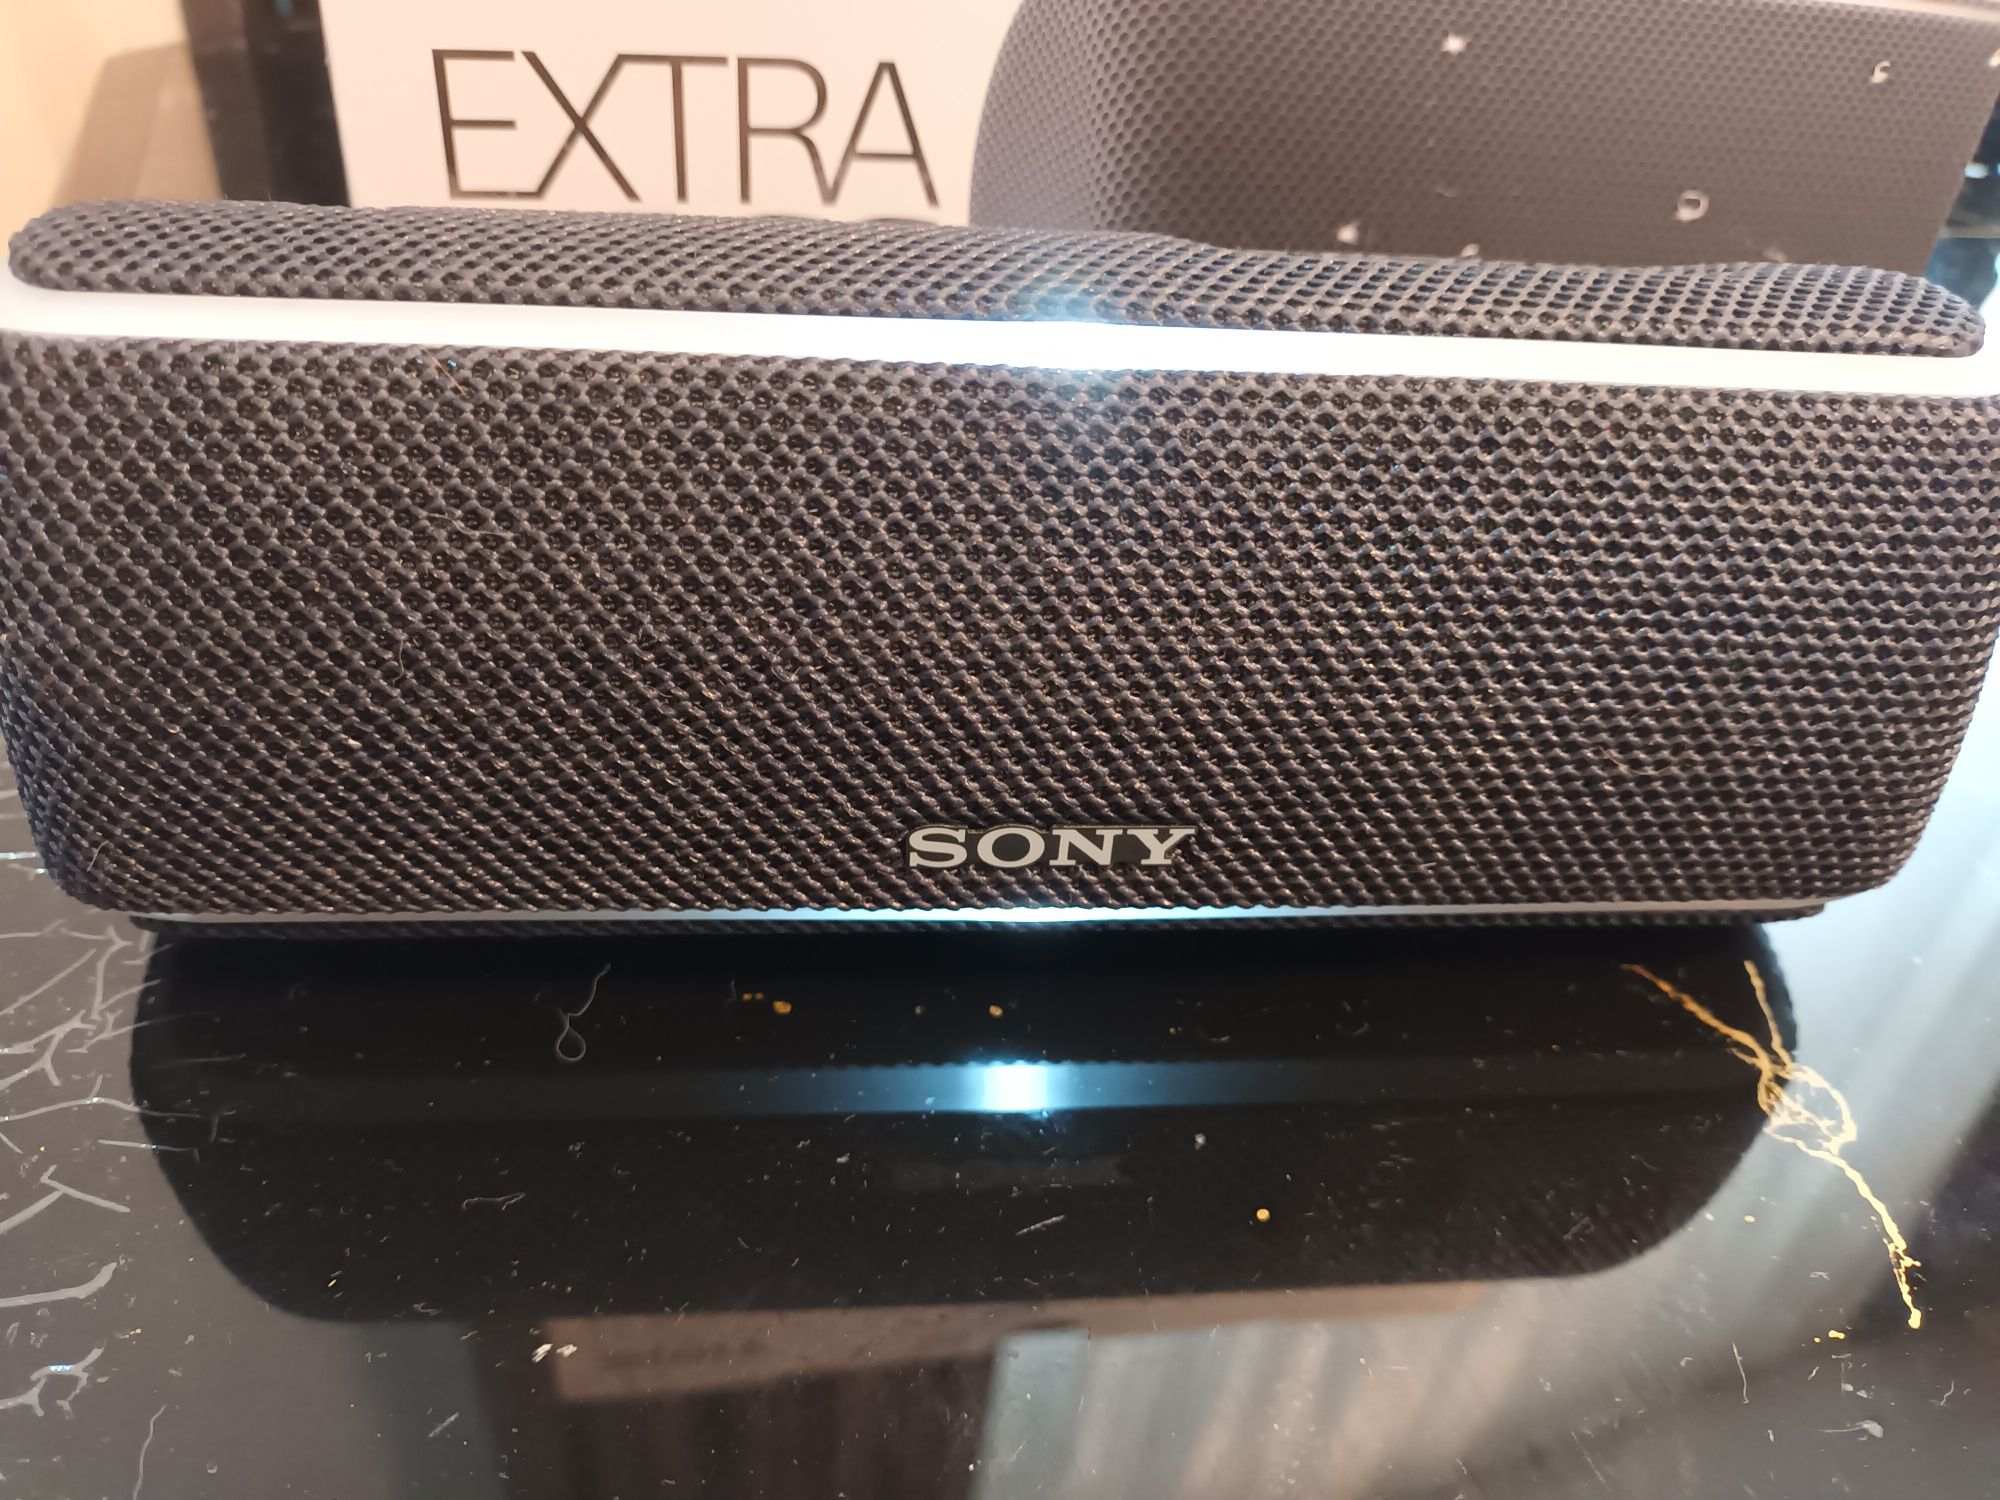 Sony SRS-XB21 wireless speaker